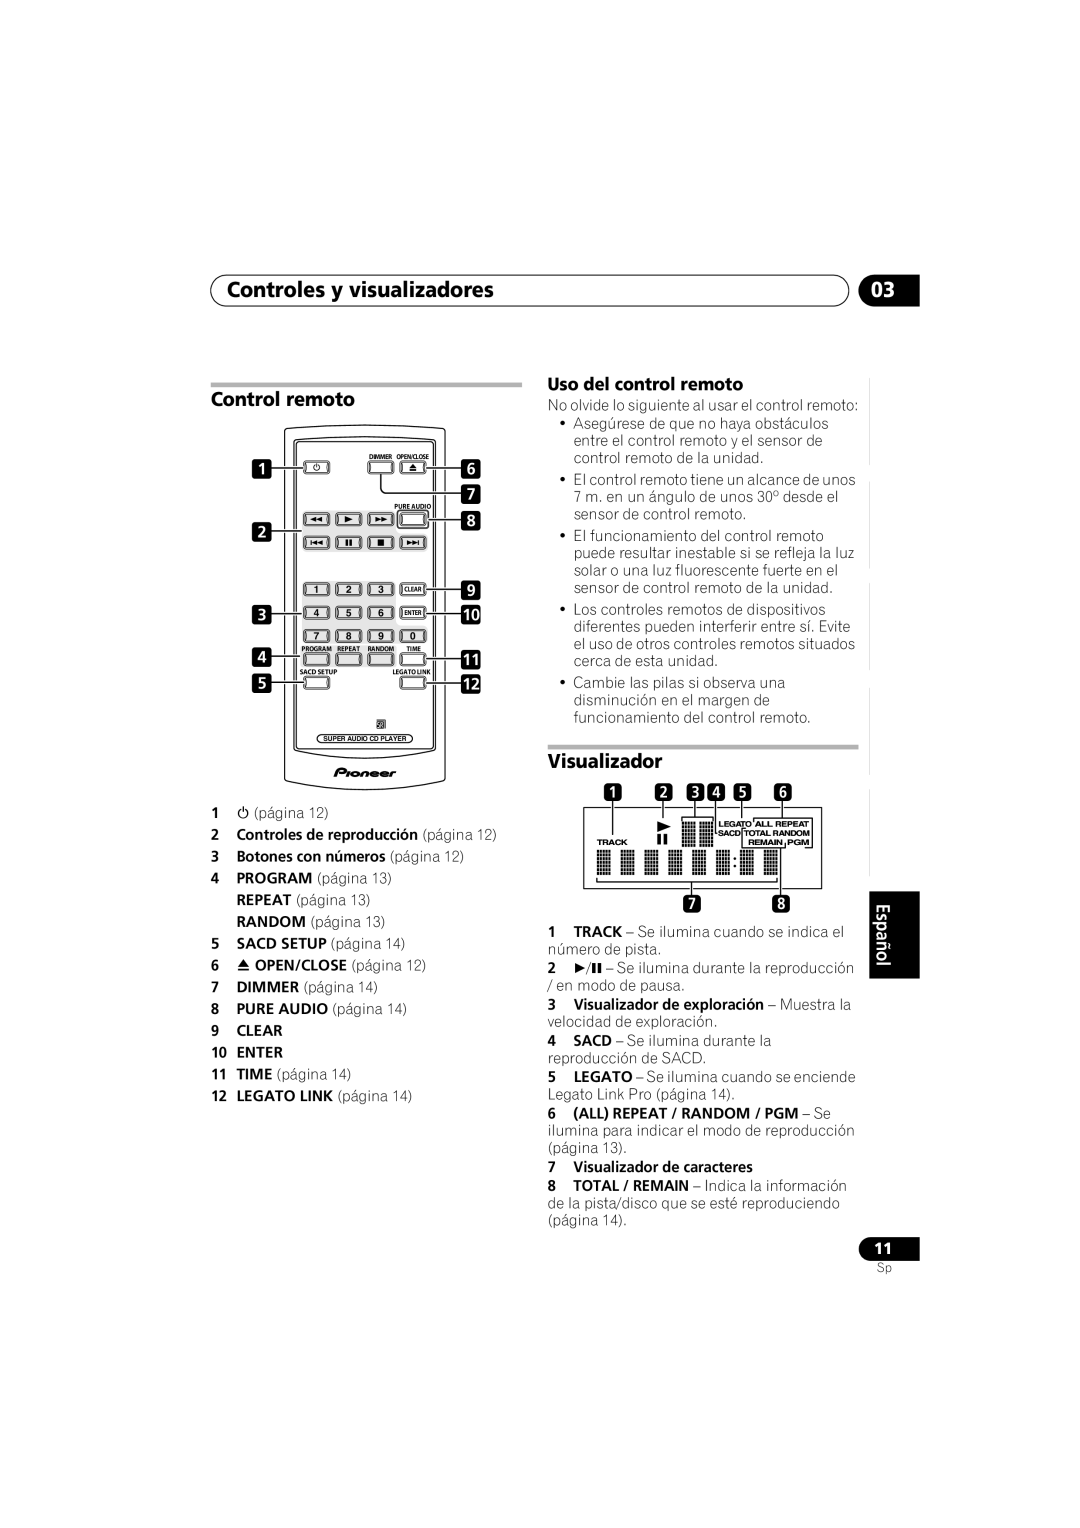 Pioneer PD-D6-J manual Controles y visualizadores, Control remoto, Uso del control remoto, Visualizador 